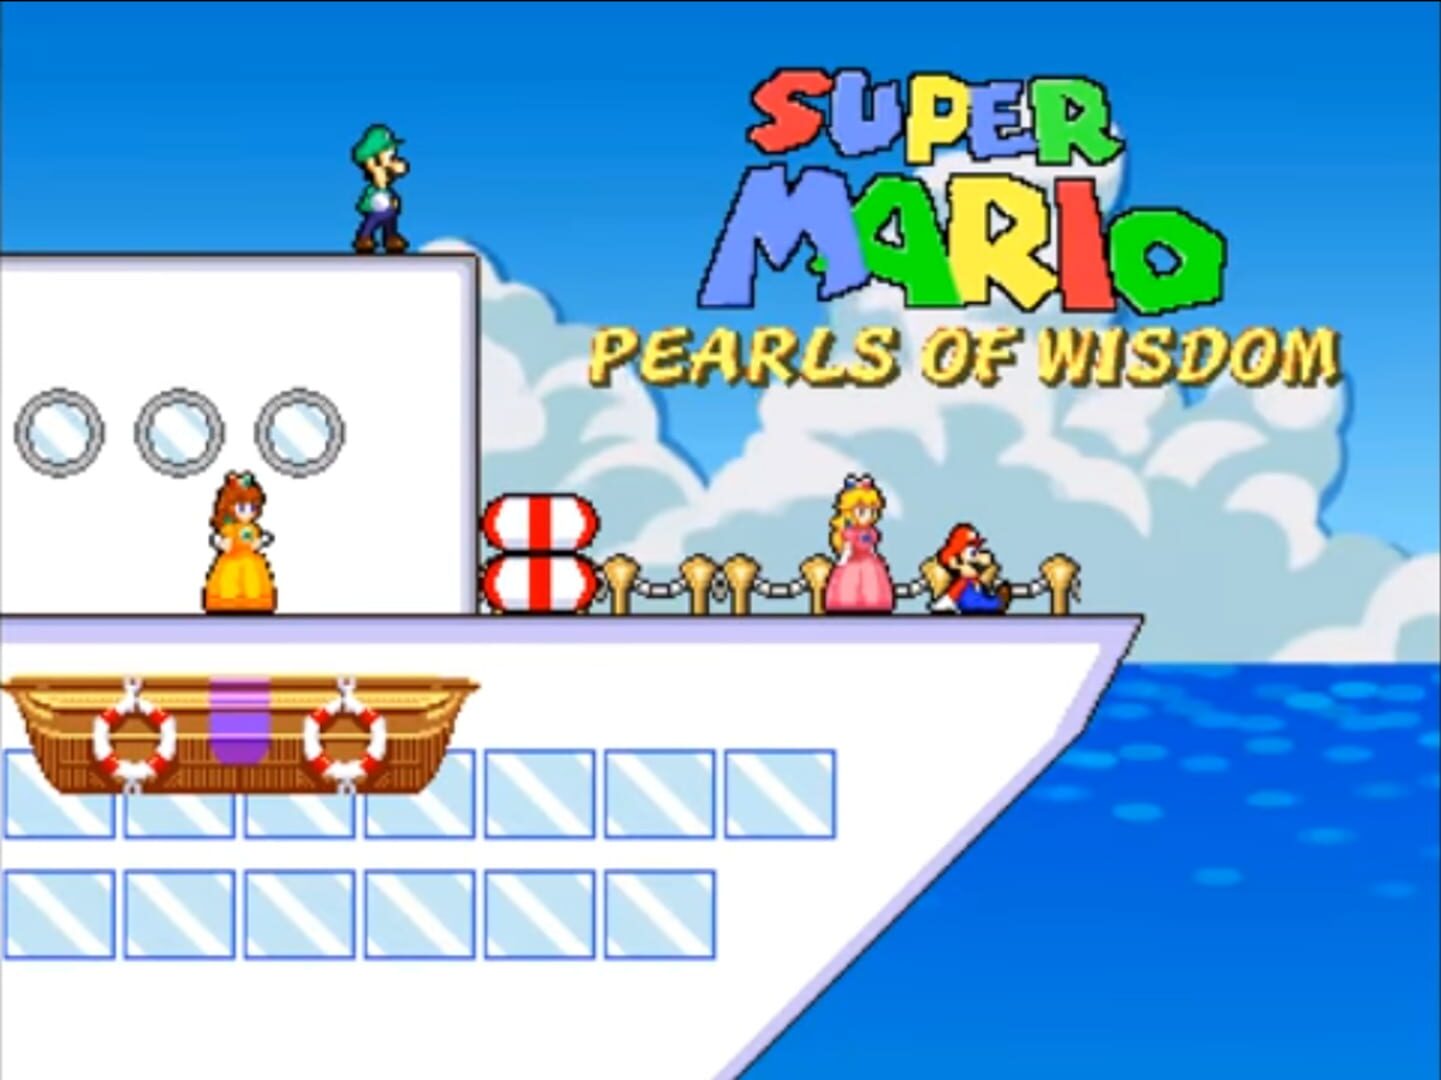 Super Mario Pearls of Wisdom